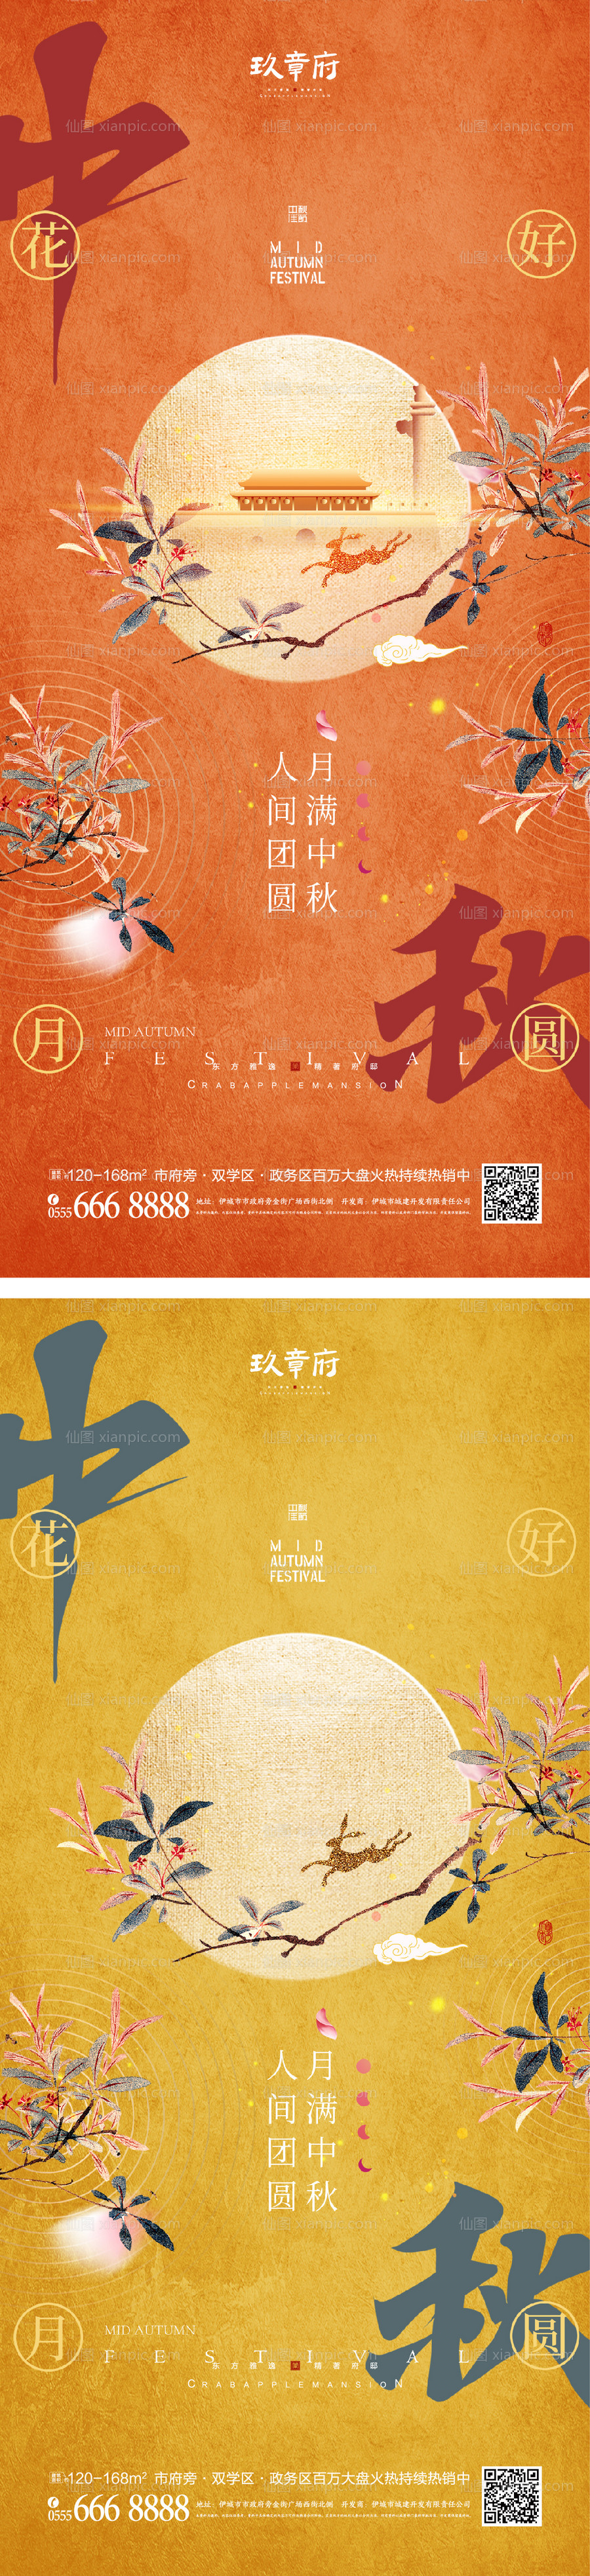 仙图网-中秋节海报